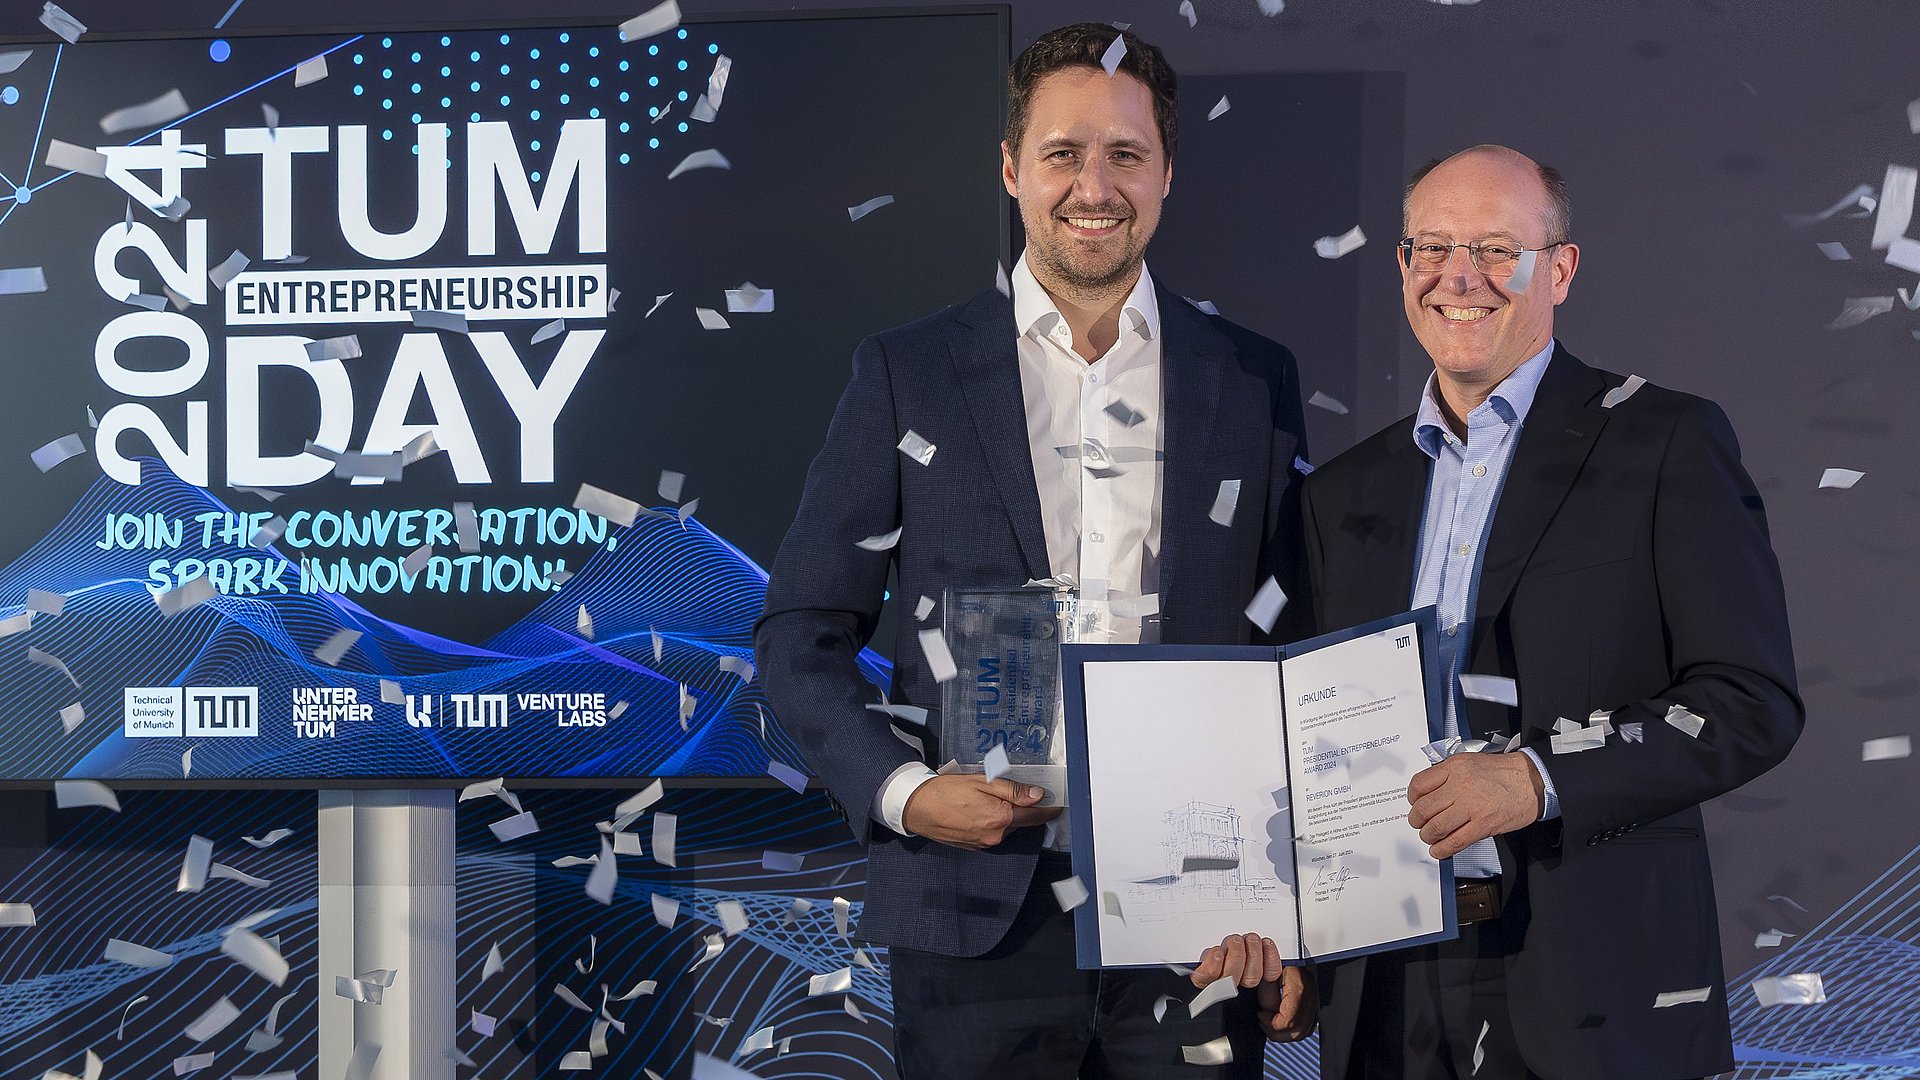 TUM Vice President Gerhard Kramer congratulates Reverion founder Stephan Herrmann.